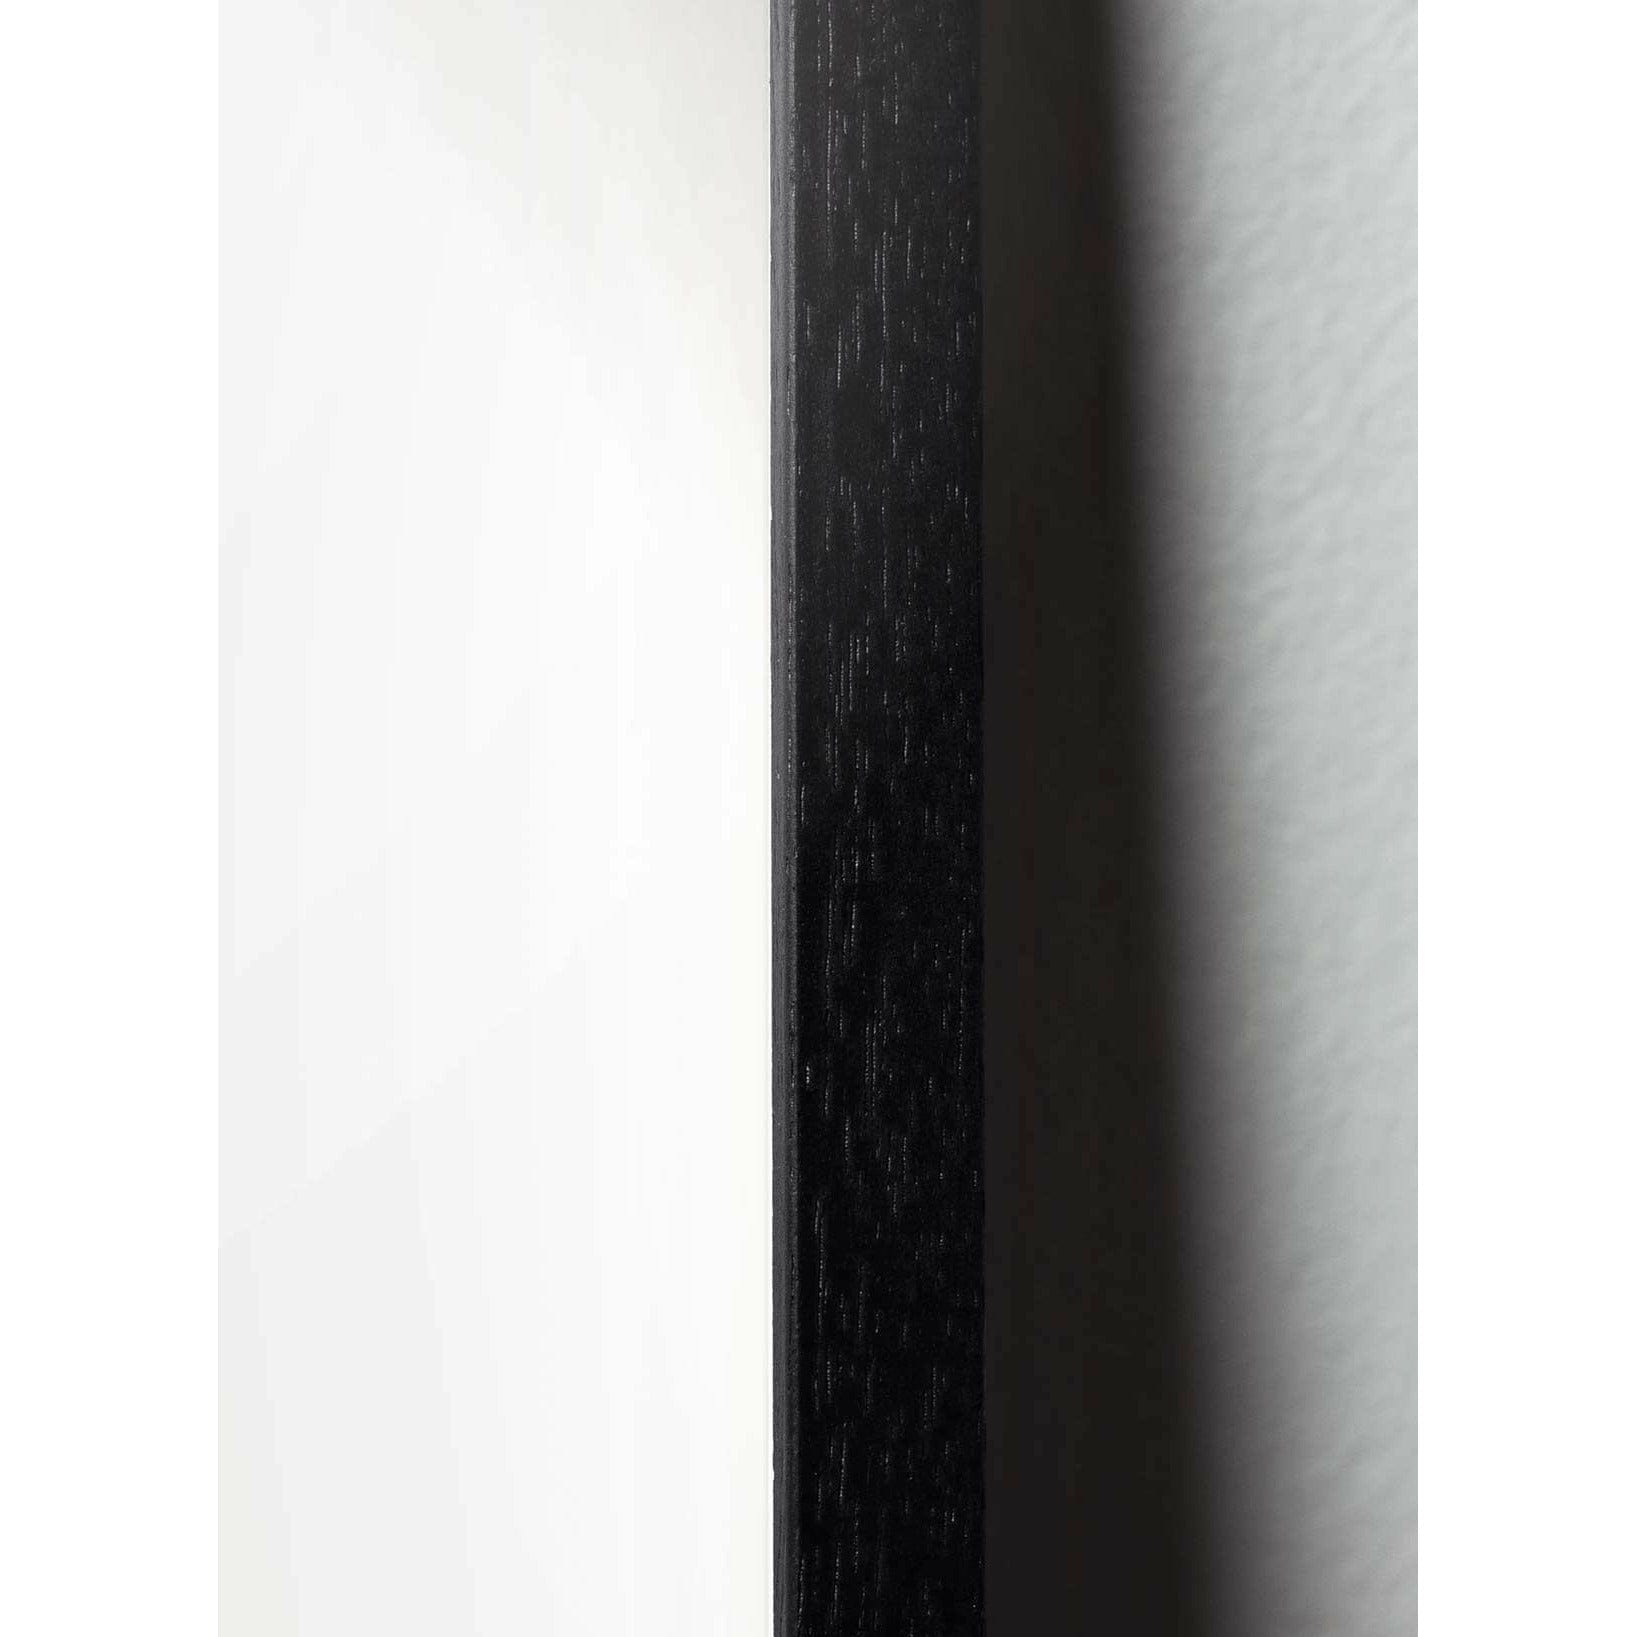 brainchild Drop Classic Poster, Rahmen in schwarz lackiertem Holz 50x70 cm, sandfarbener Hintergrund